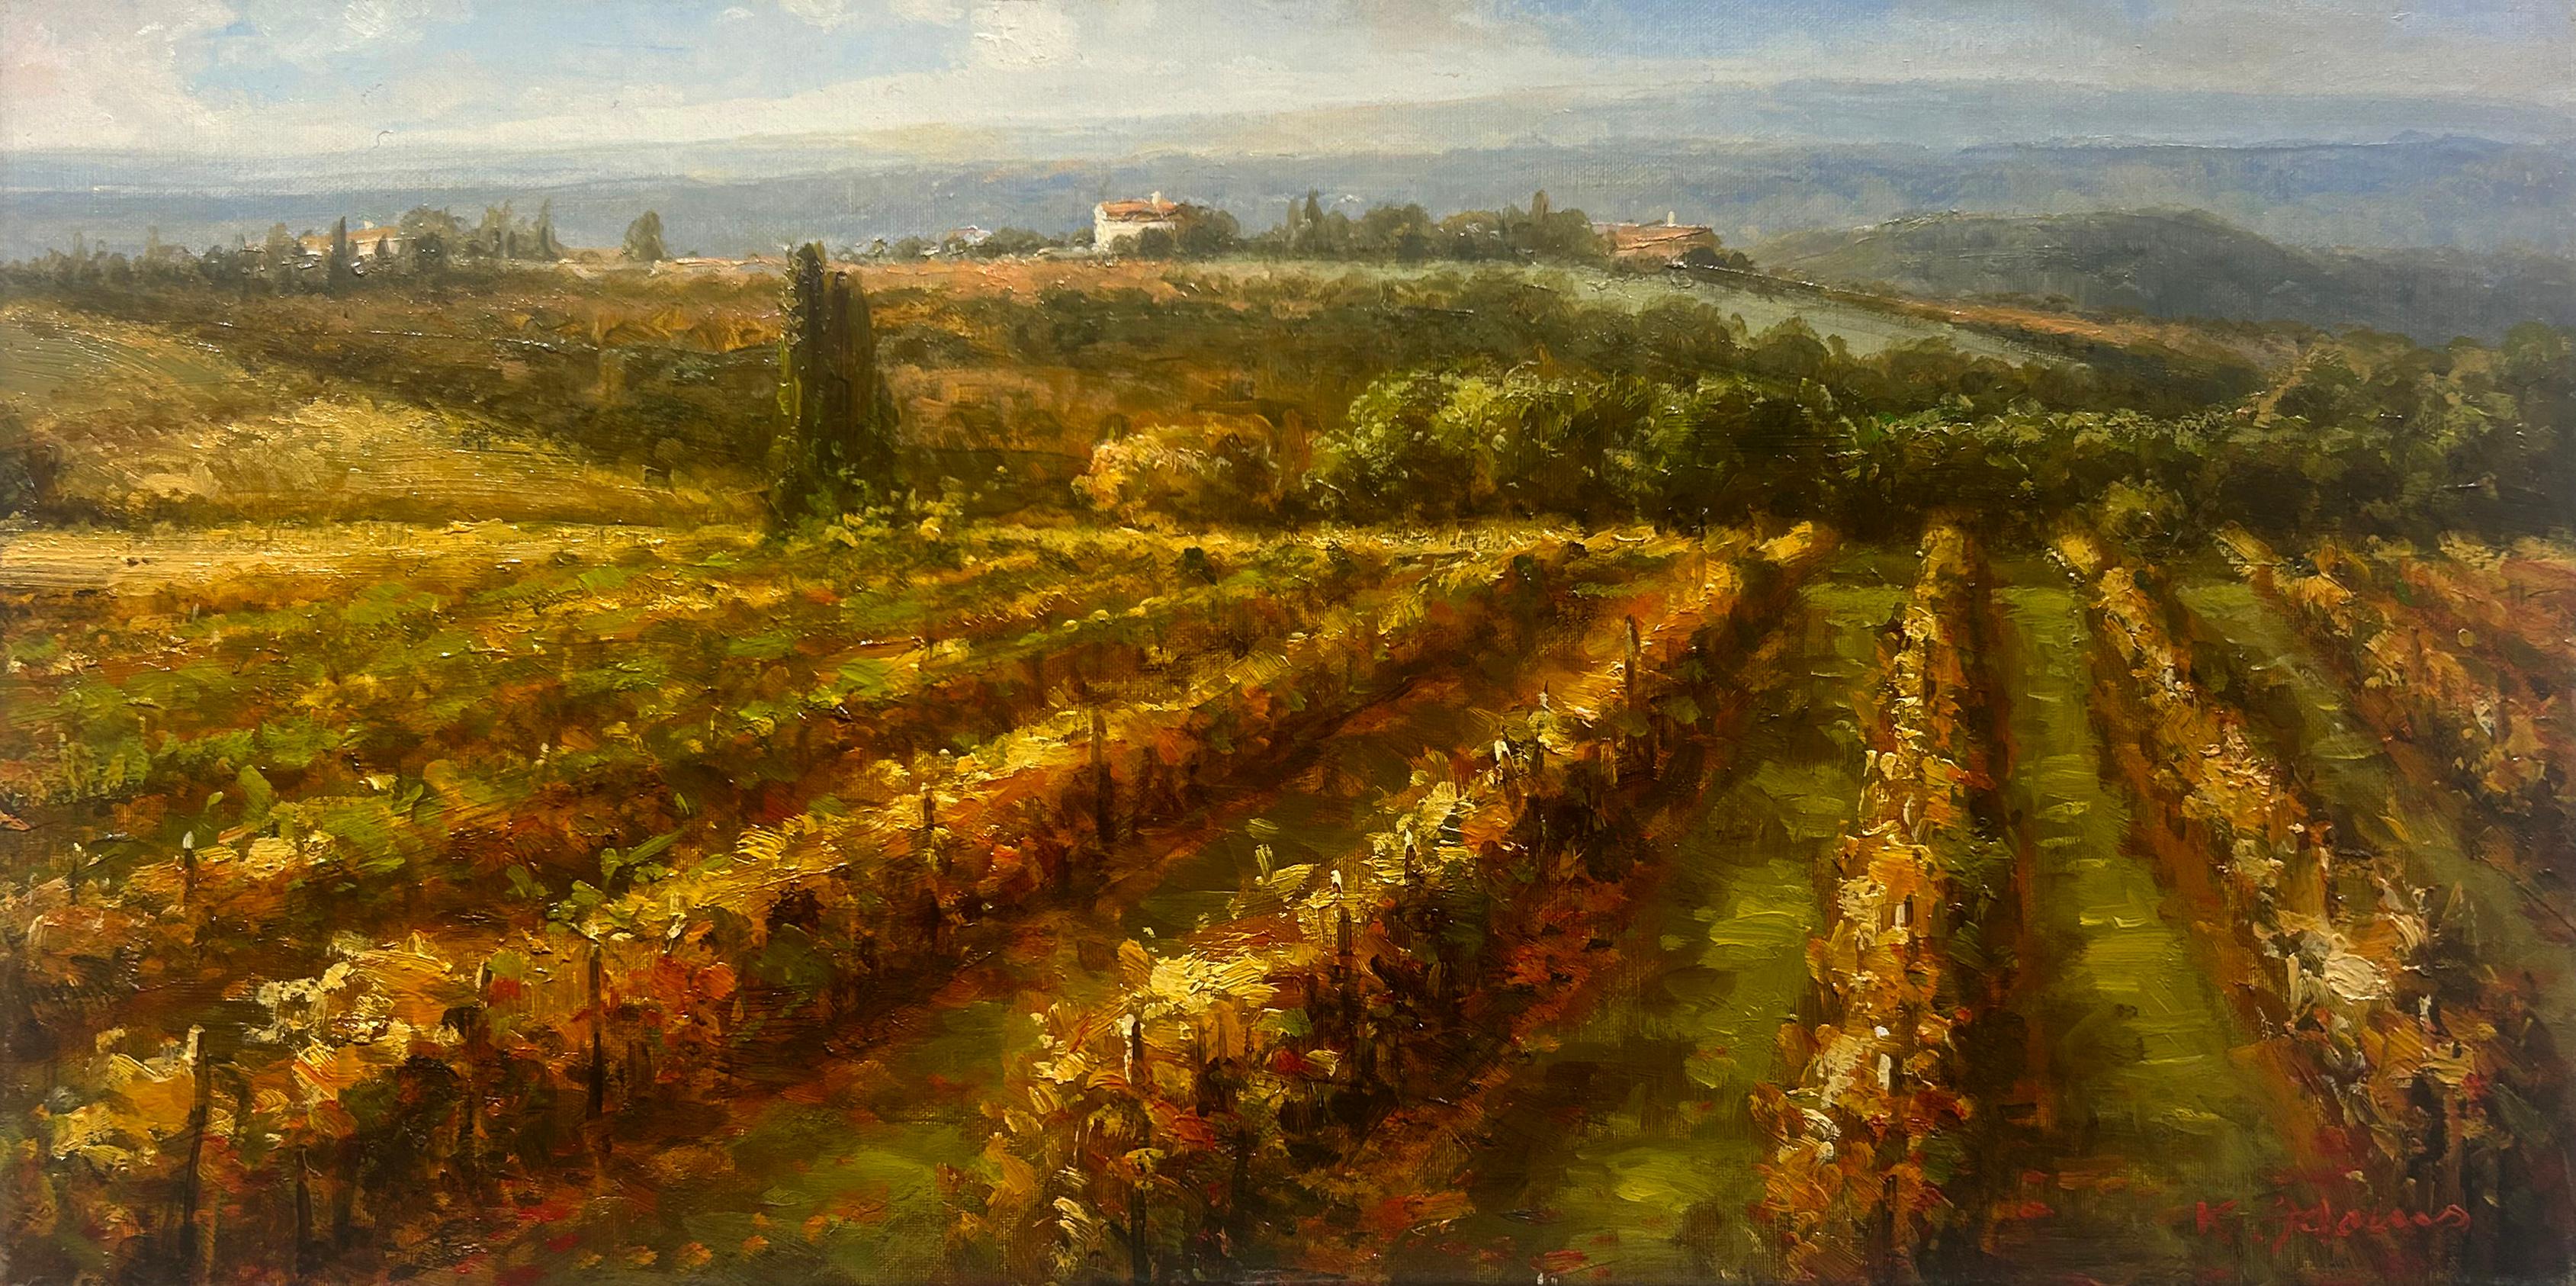 "Soirée d'été" 12x24 est une peinture à l'huile sur toile de l'artiste Ronald Adams. Il s'agit d'un paysage toscan paisible et chaleureux. Des coups de pinceau épais et habiles sculptent des rangées de vignes pour illustrer un vignoble vallonné. Des